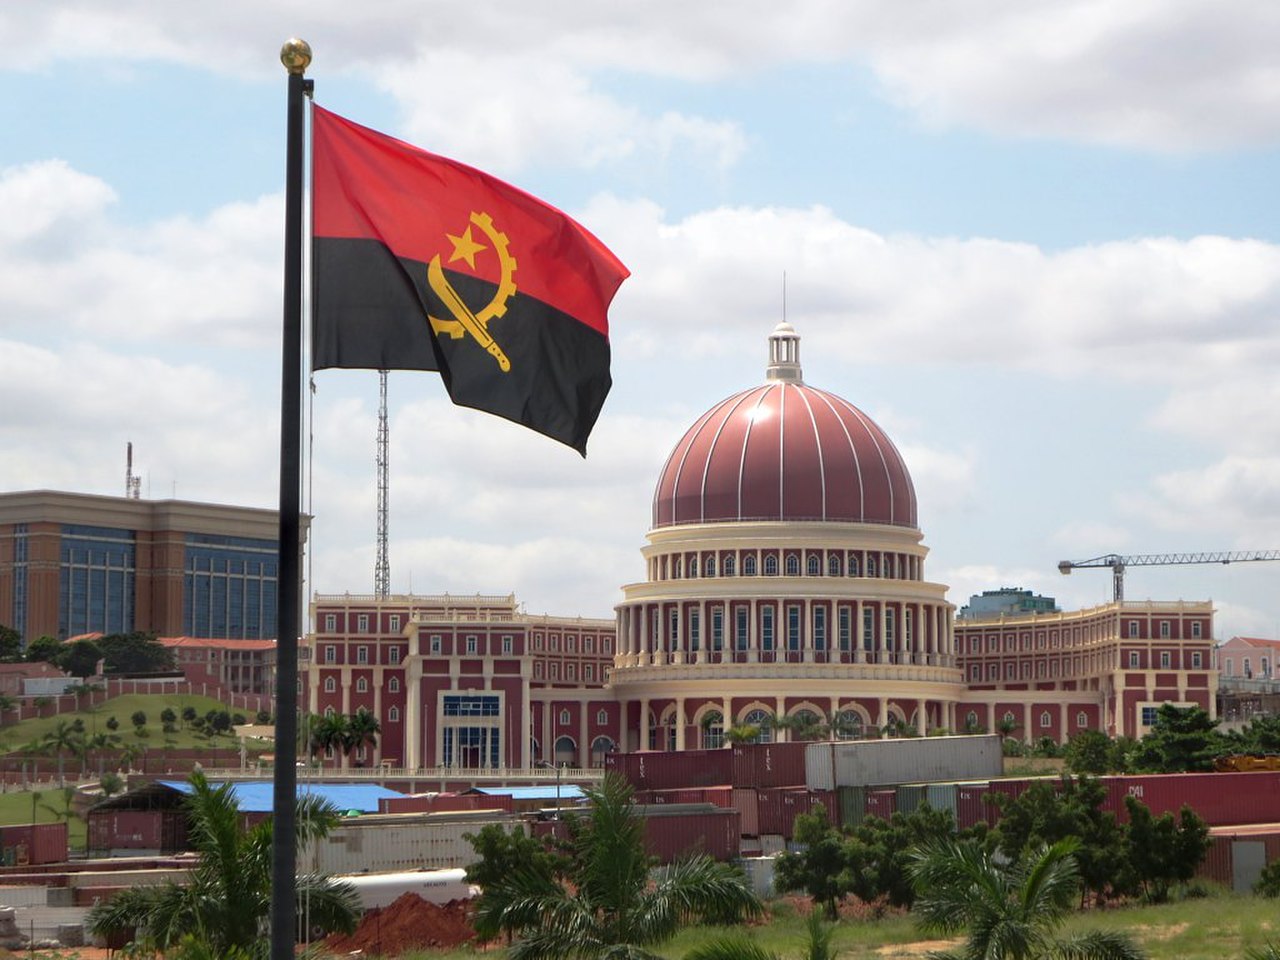 رئيس أنغولا يعلن التوصل لوقف إطلاق النار بين الكونغو الديمقراطية ورواندا